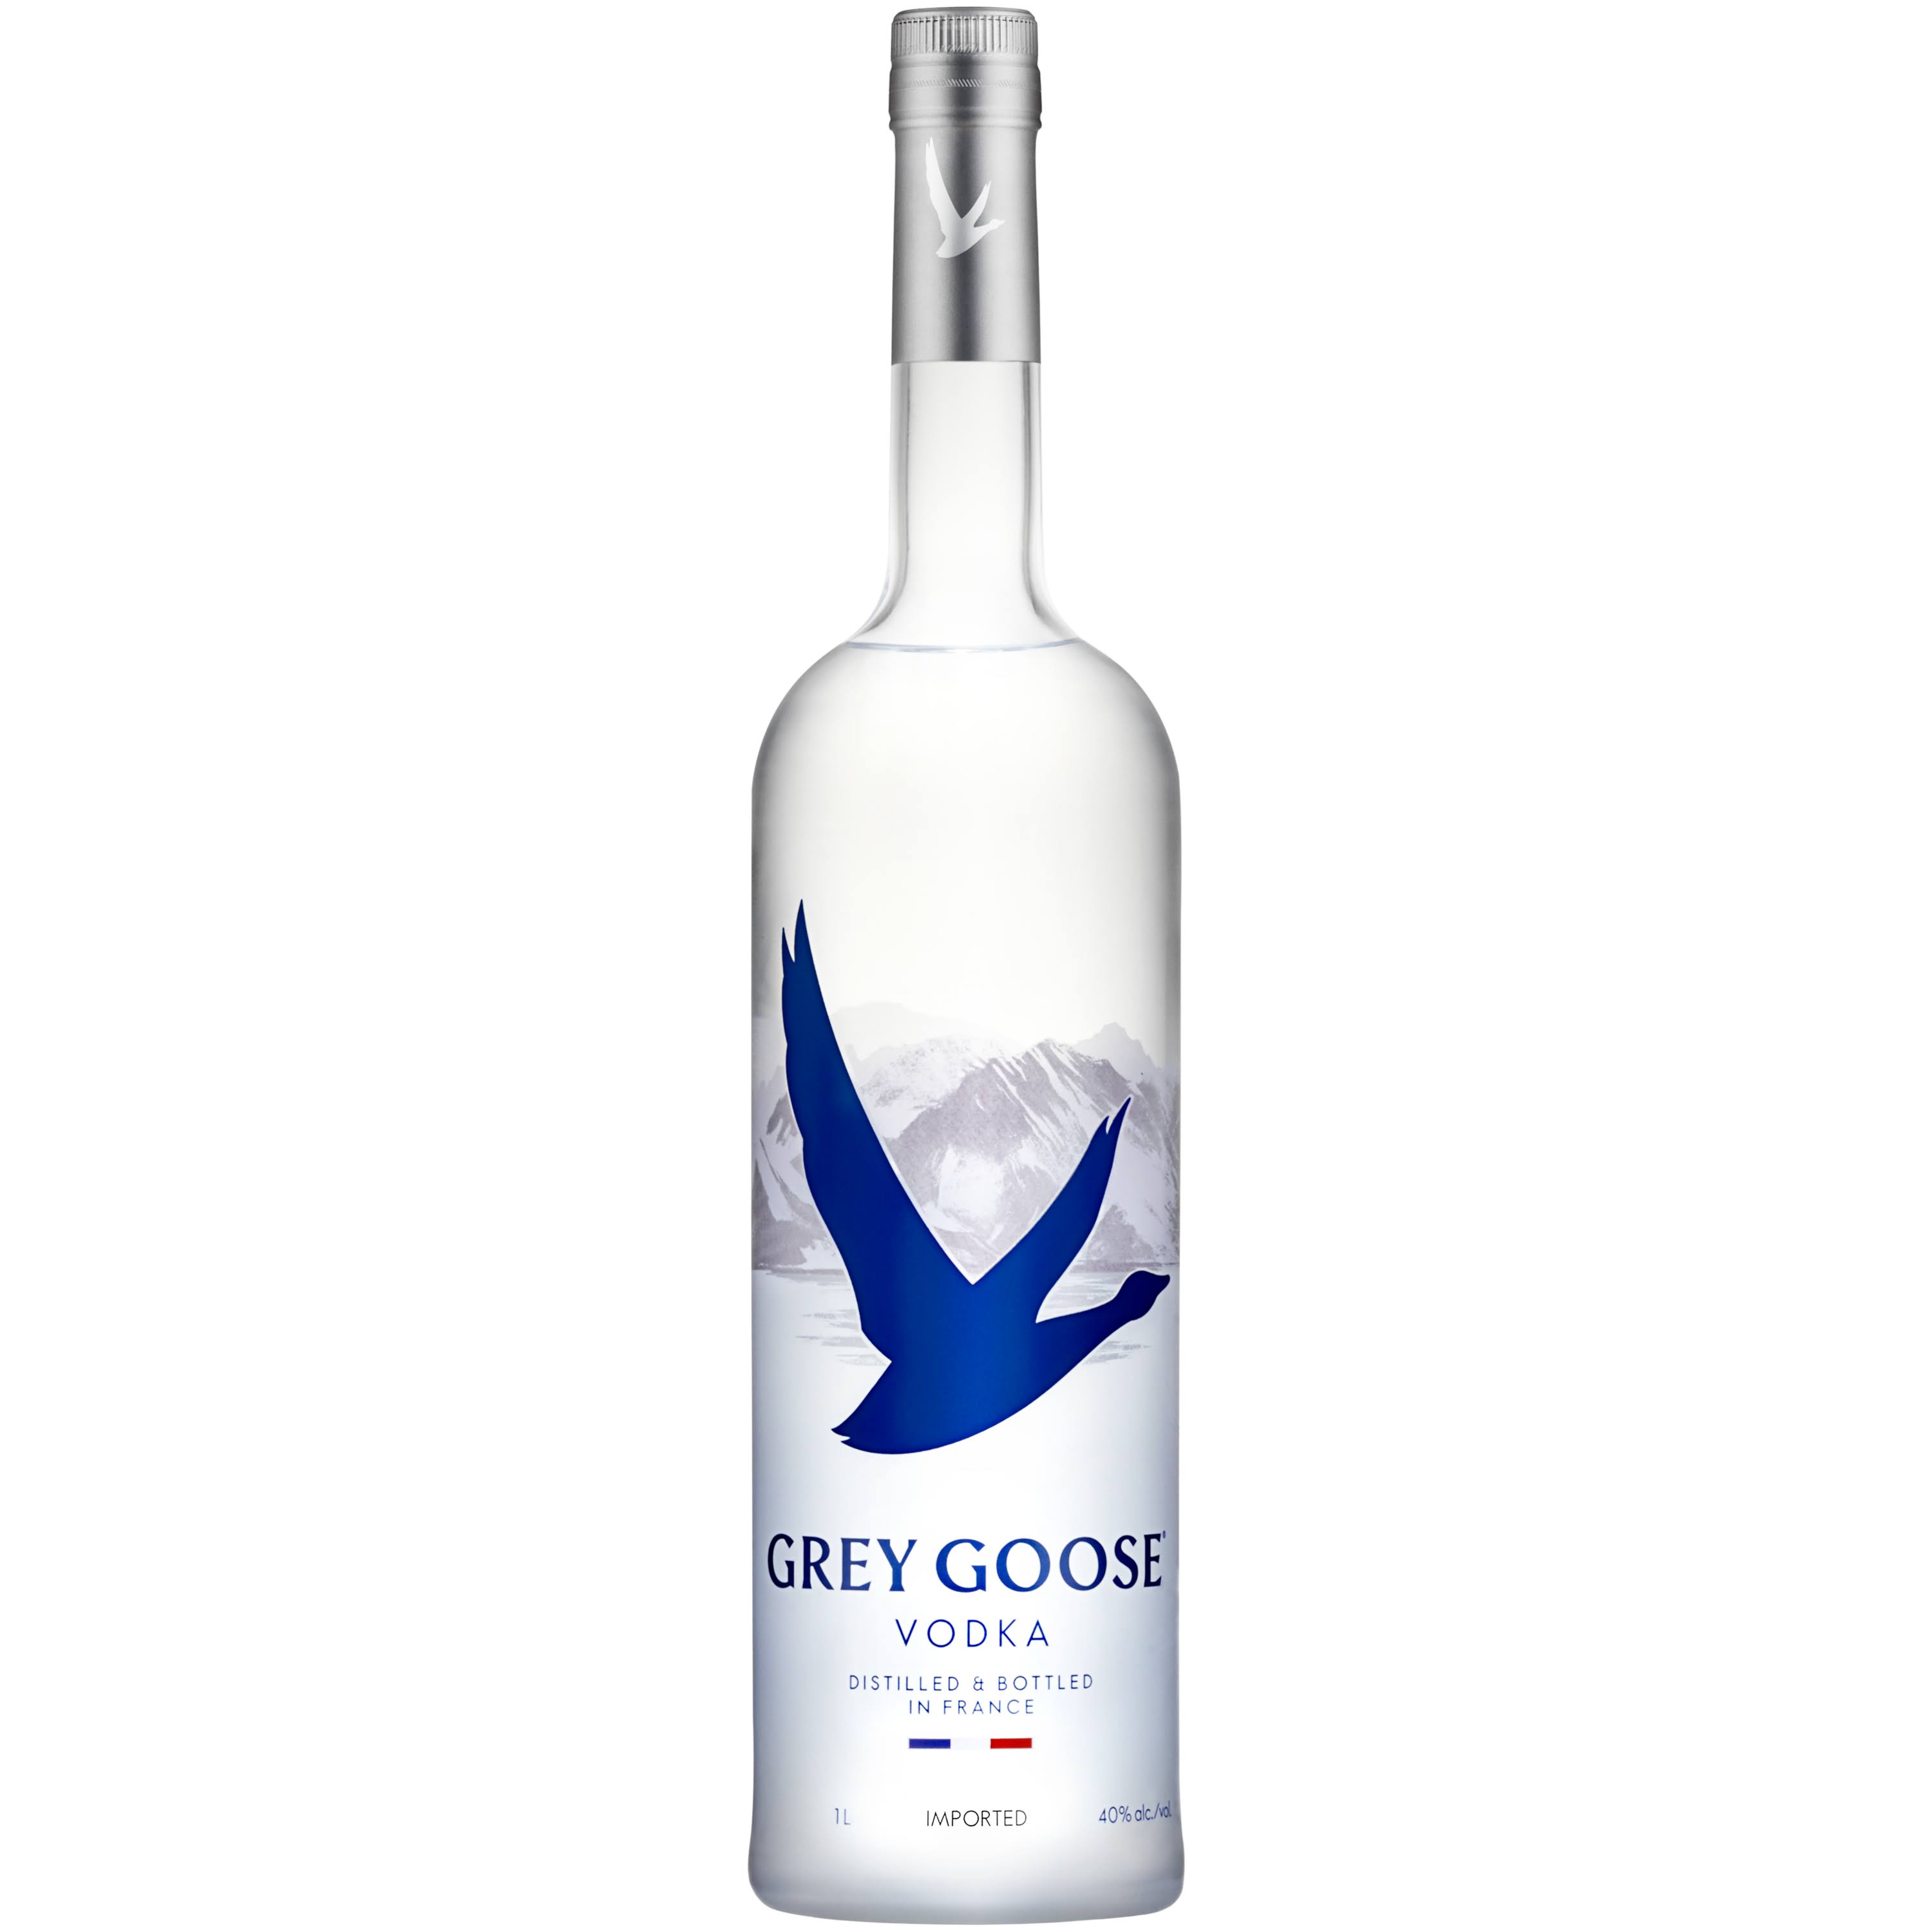 Grey Goose Original Vodka - 40%, 1l